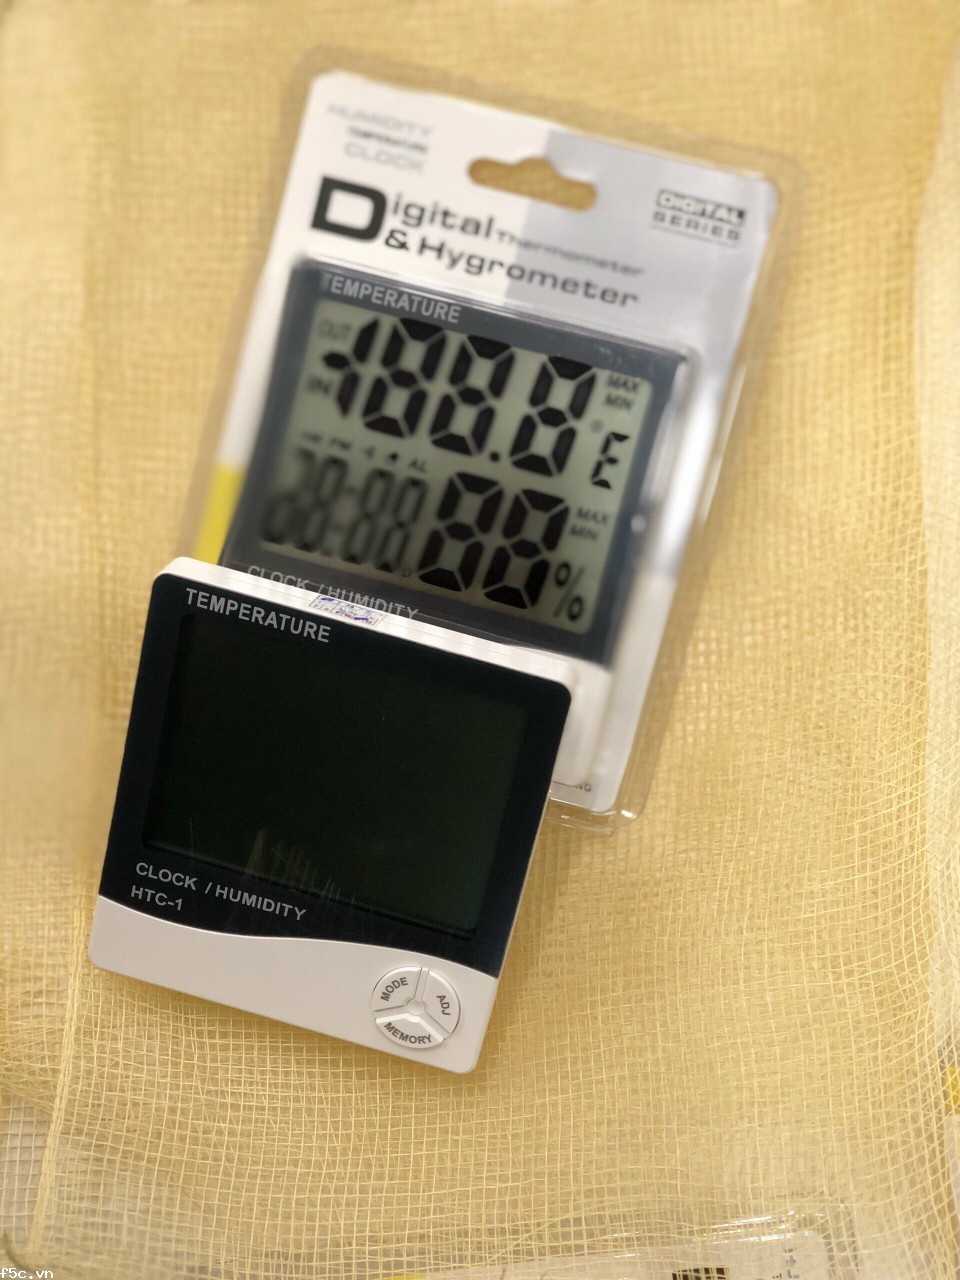 Đồng hồ đo nhiệt độ, độ ẩm treo tường trong nhà HTC1